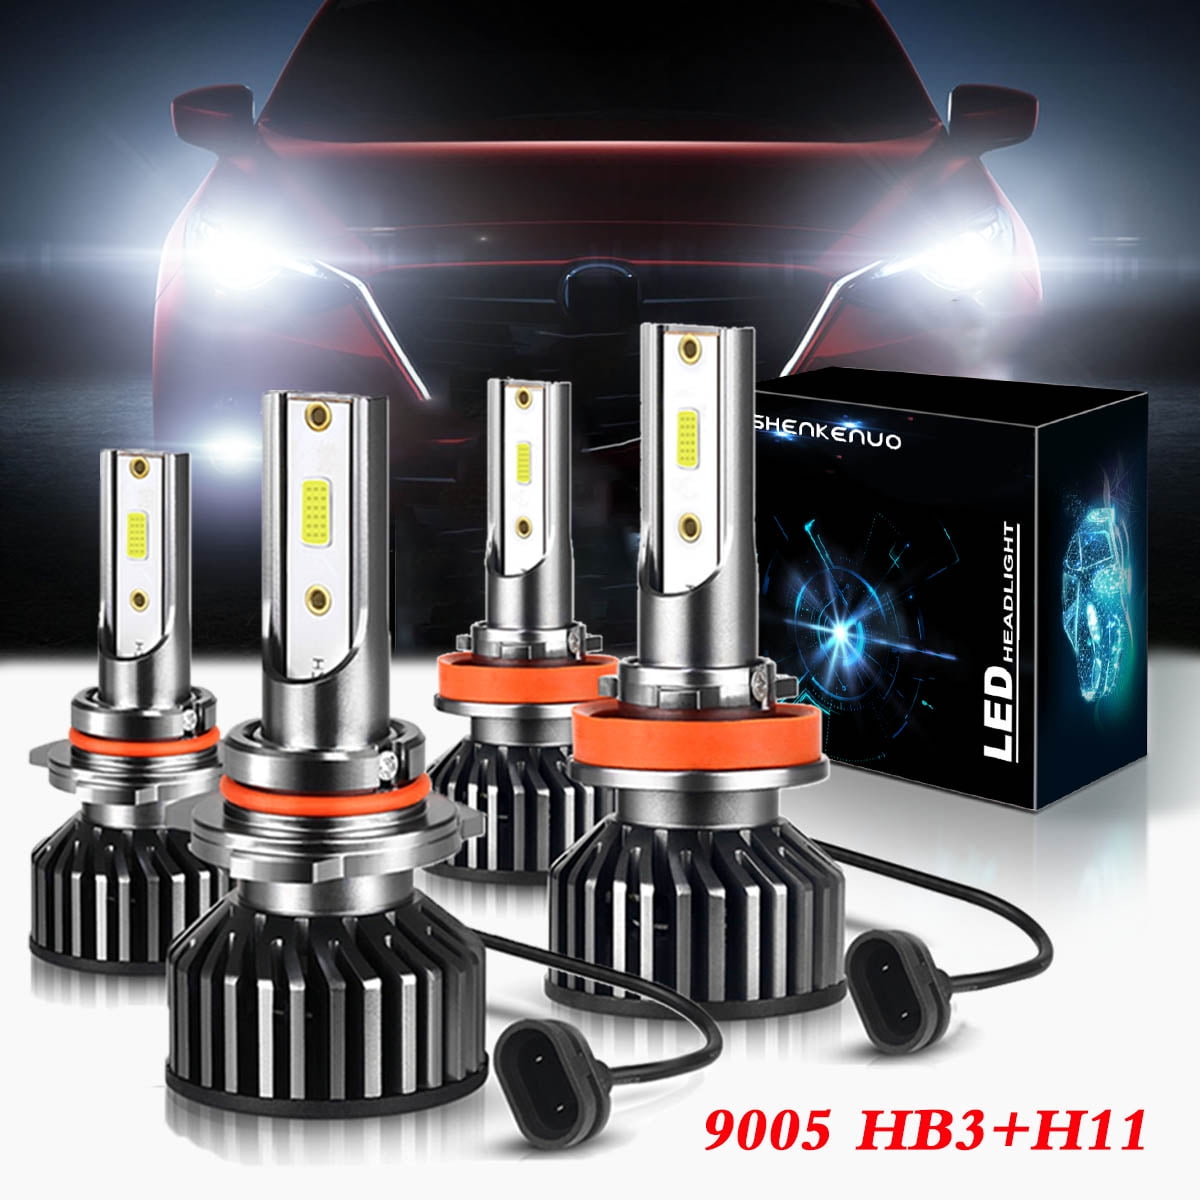 For Mazda 3 Series 2009-2016 High Main Beam HB3 Xenon Headlight Bulbs Pair Lamp